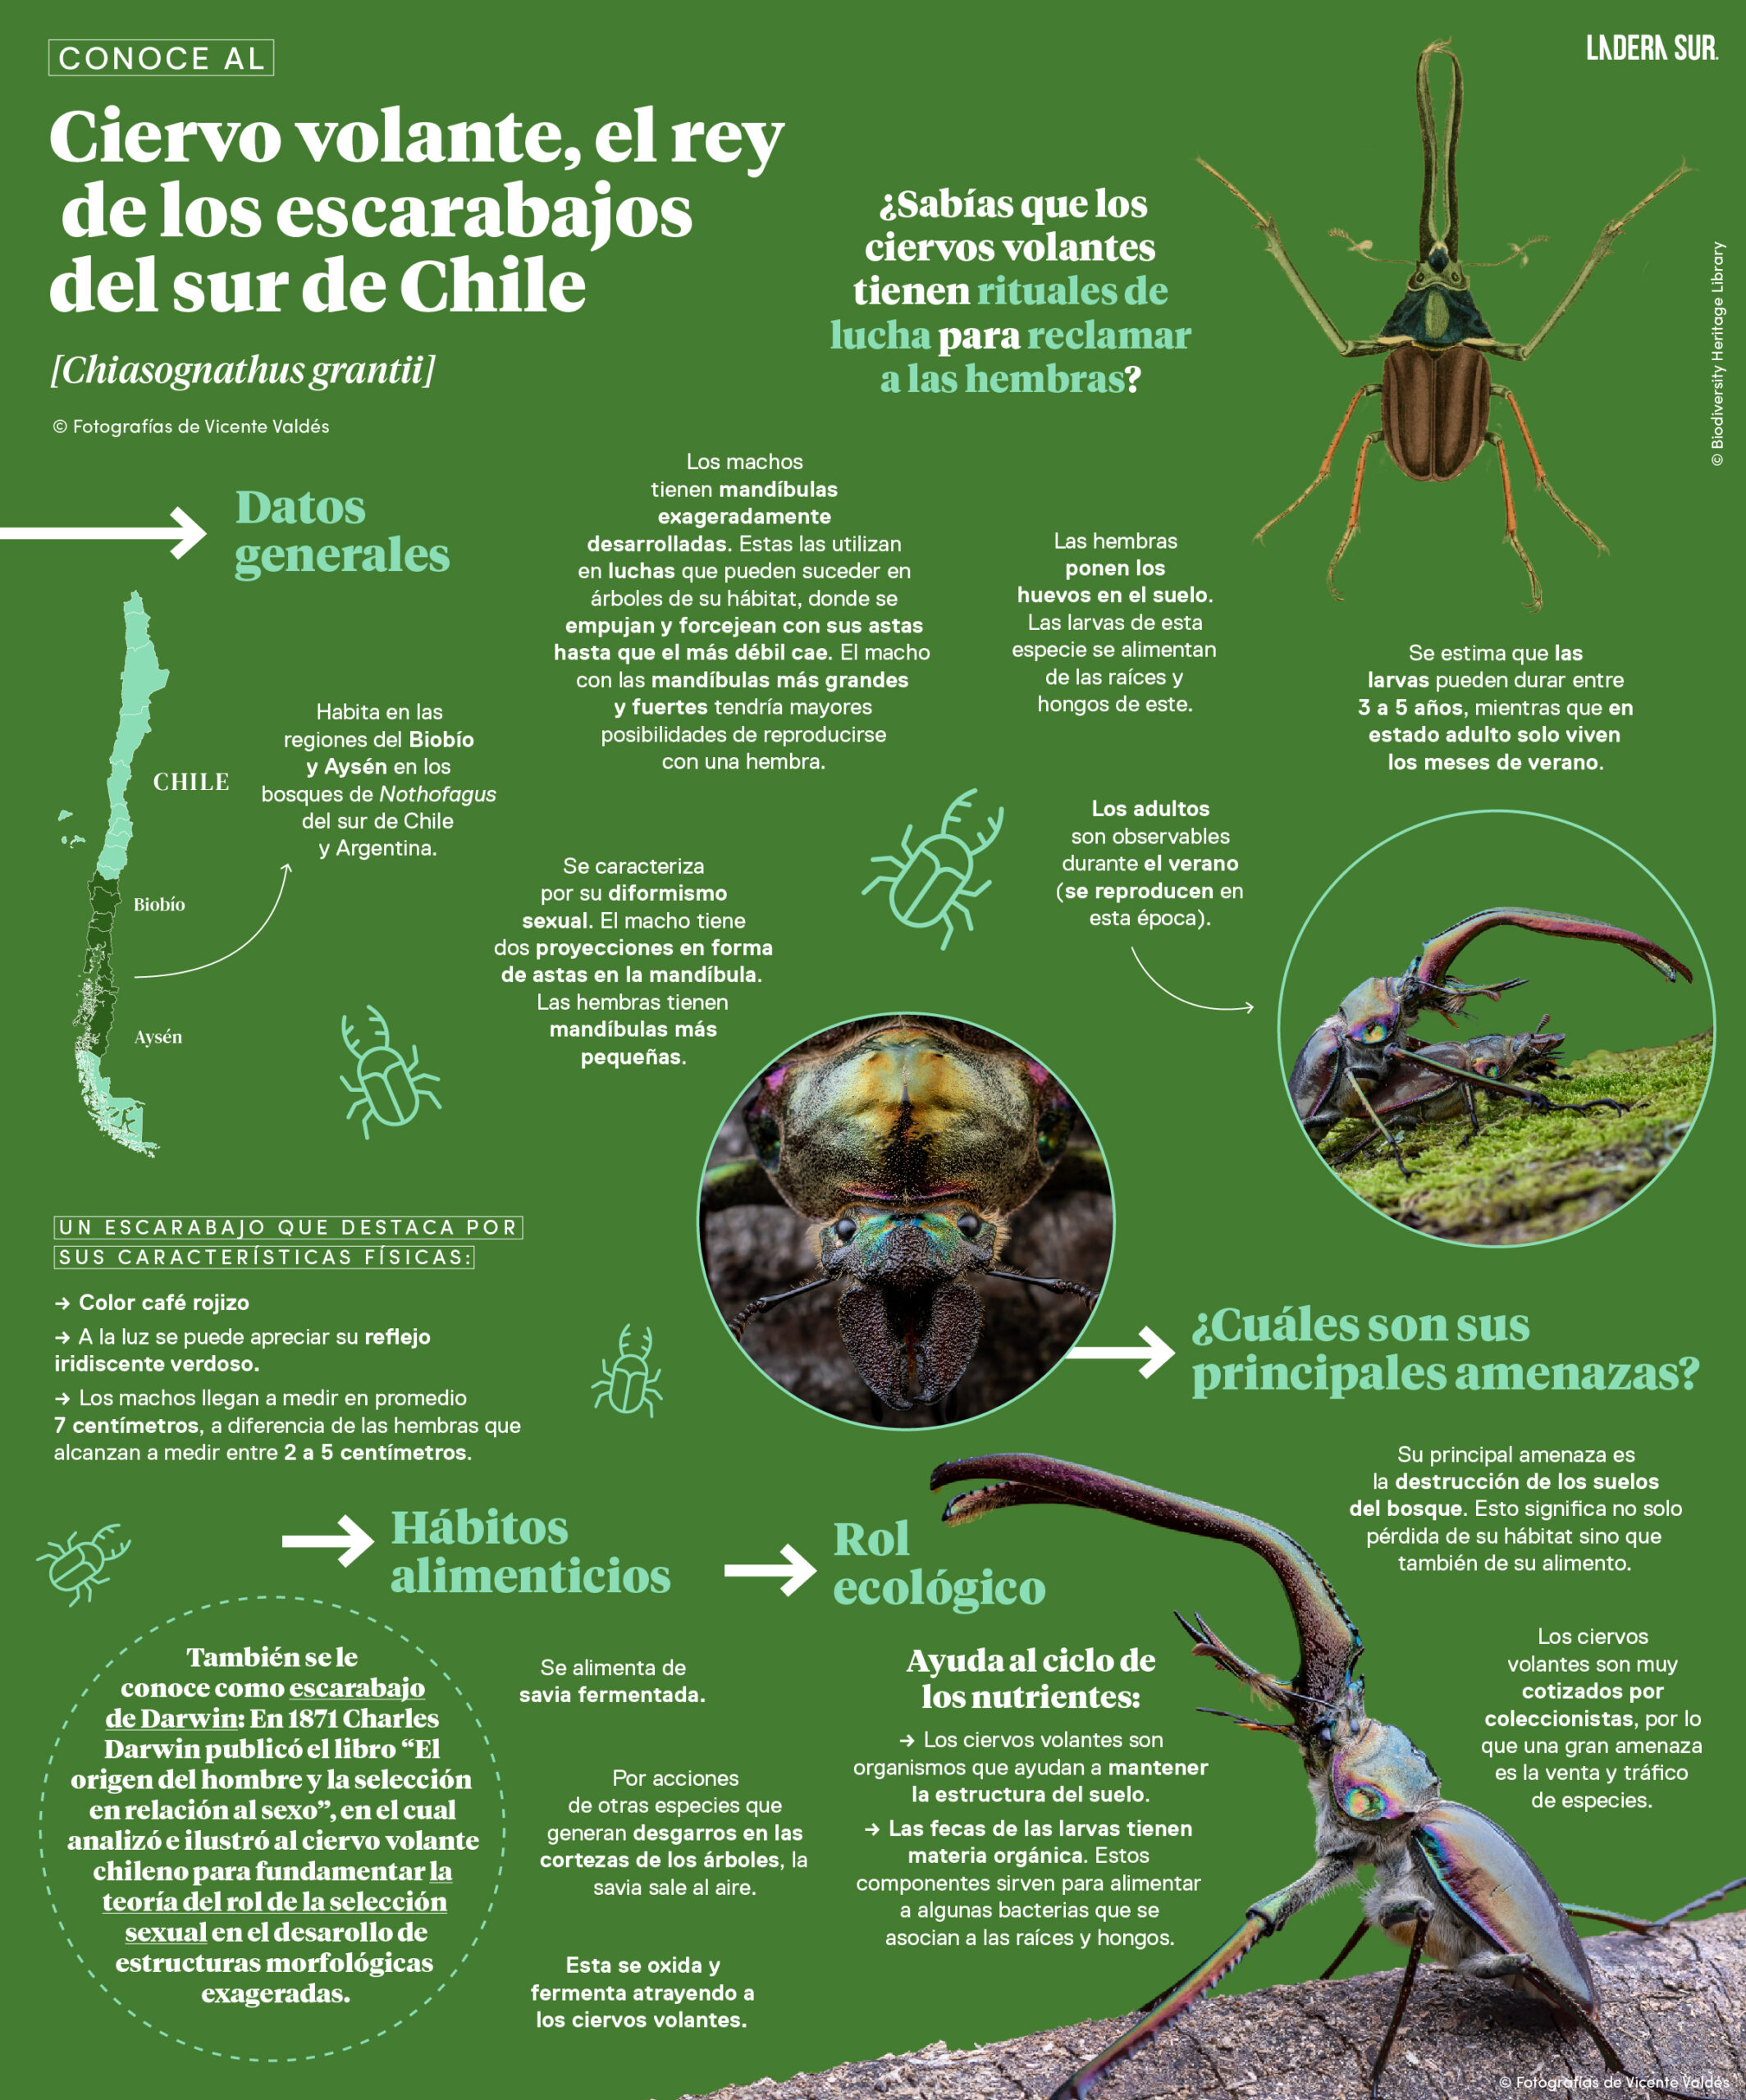 Ciervo volante, el rey de los escarabajos del sur de Chile